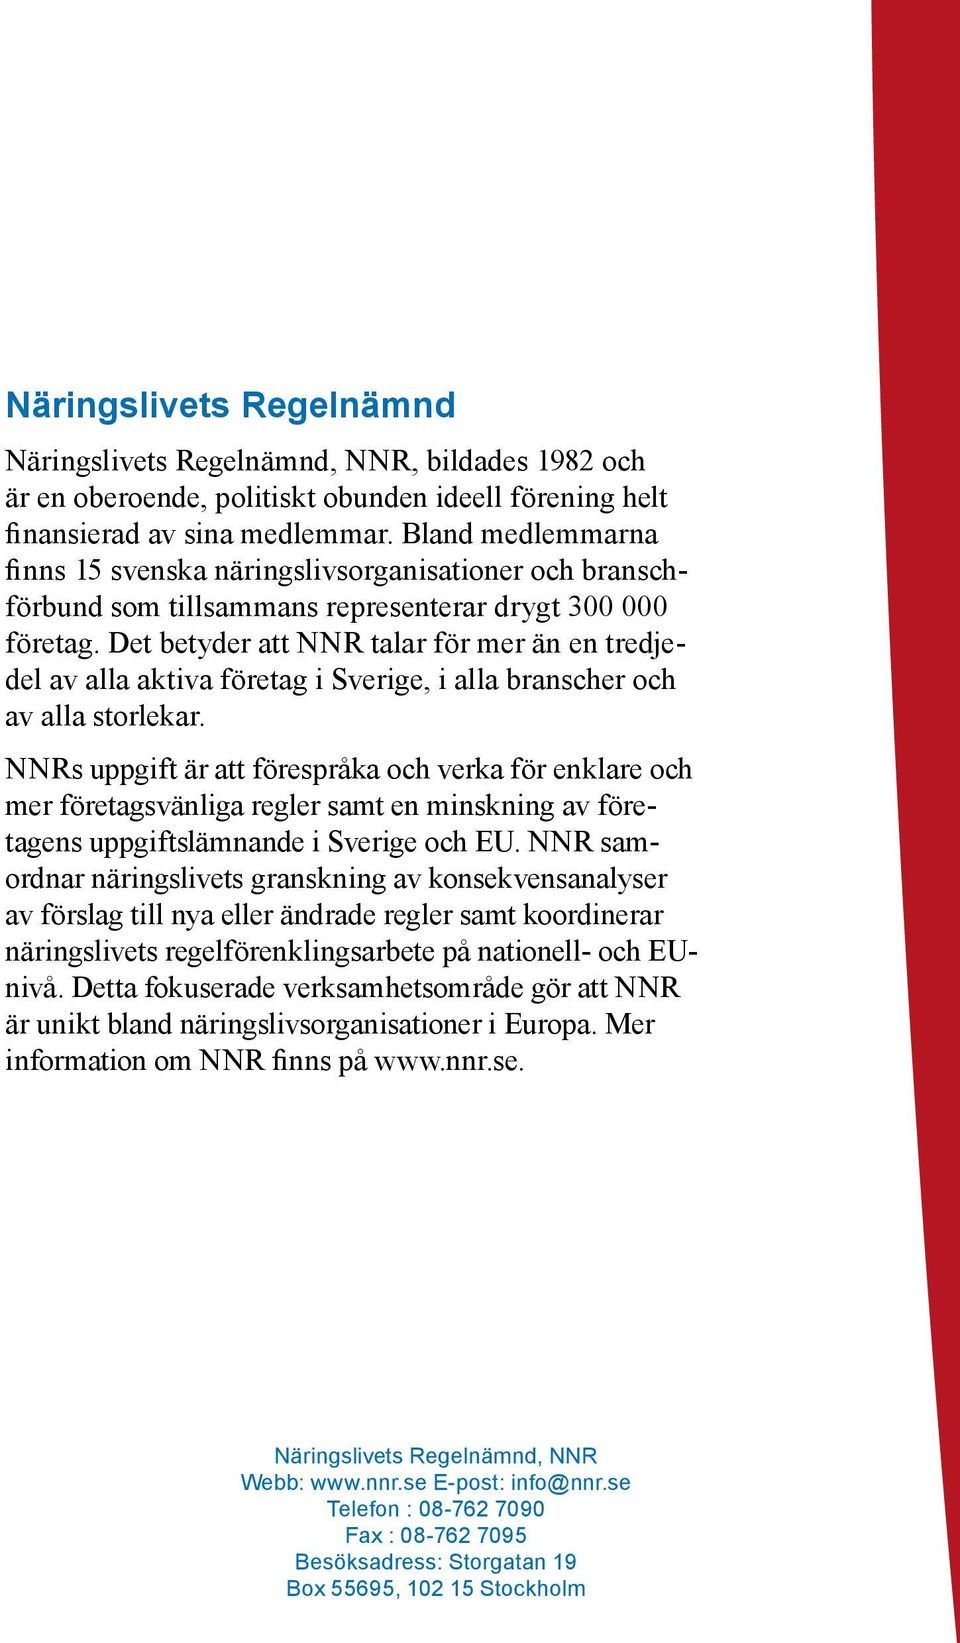 Det betyder att NNR talar för mer än en tredjedel av alla aktiva företag i Sverige, i alla branscher och av alla storlekar.